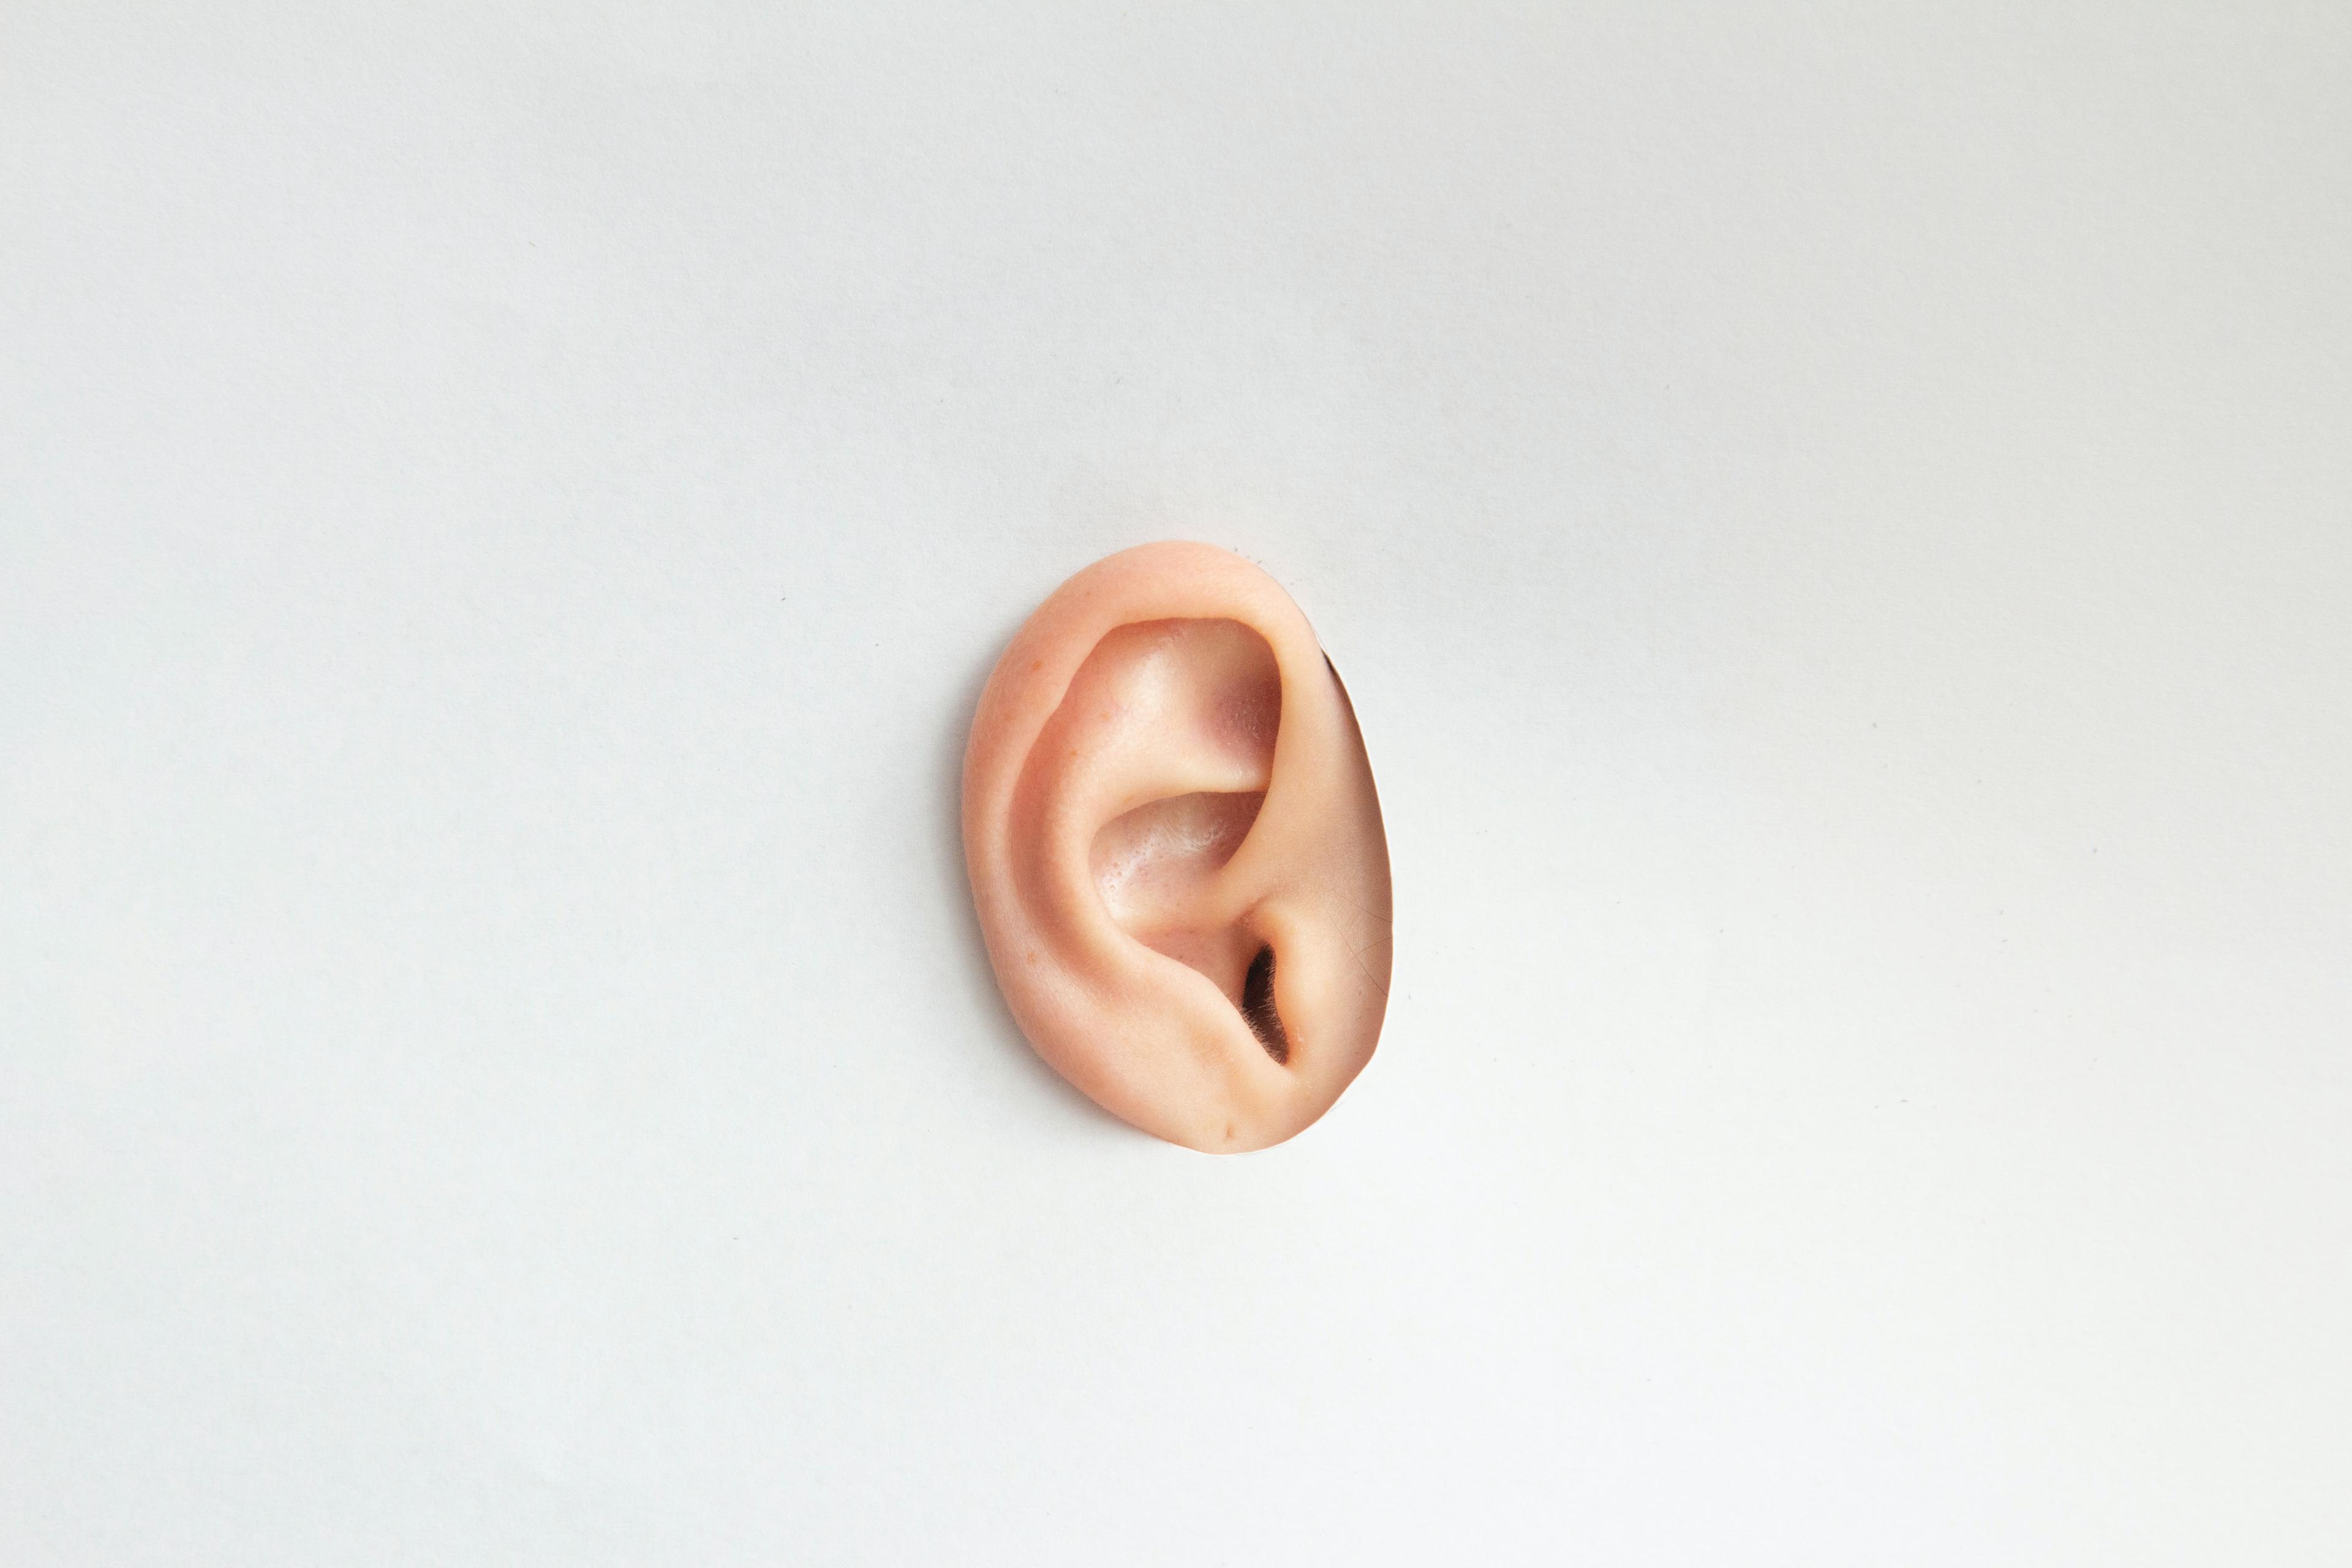 Szumy uszne – przyczyny. Skąd się biorą szumy uszne? Szumy uszne: przyczyny, objawy i leczenie. Jak pozbyć się szumu w uszach? - Objawy. Leczenie szumów w uszach. Przyczyny i leczenie, diagnostyka